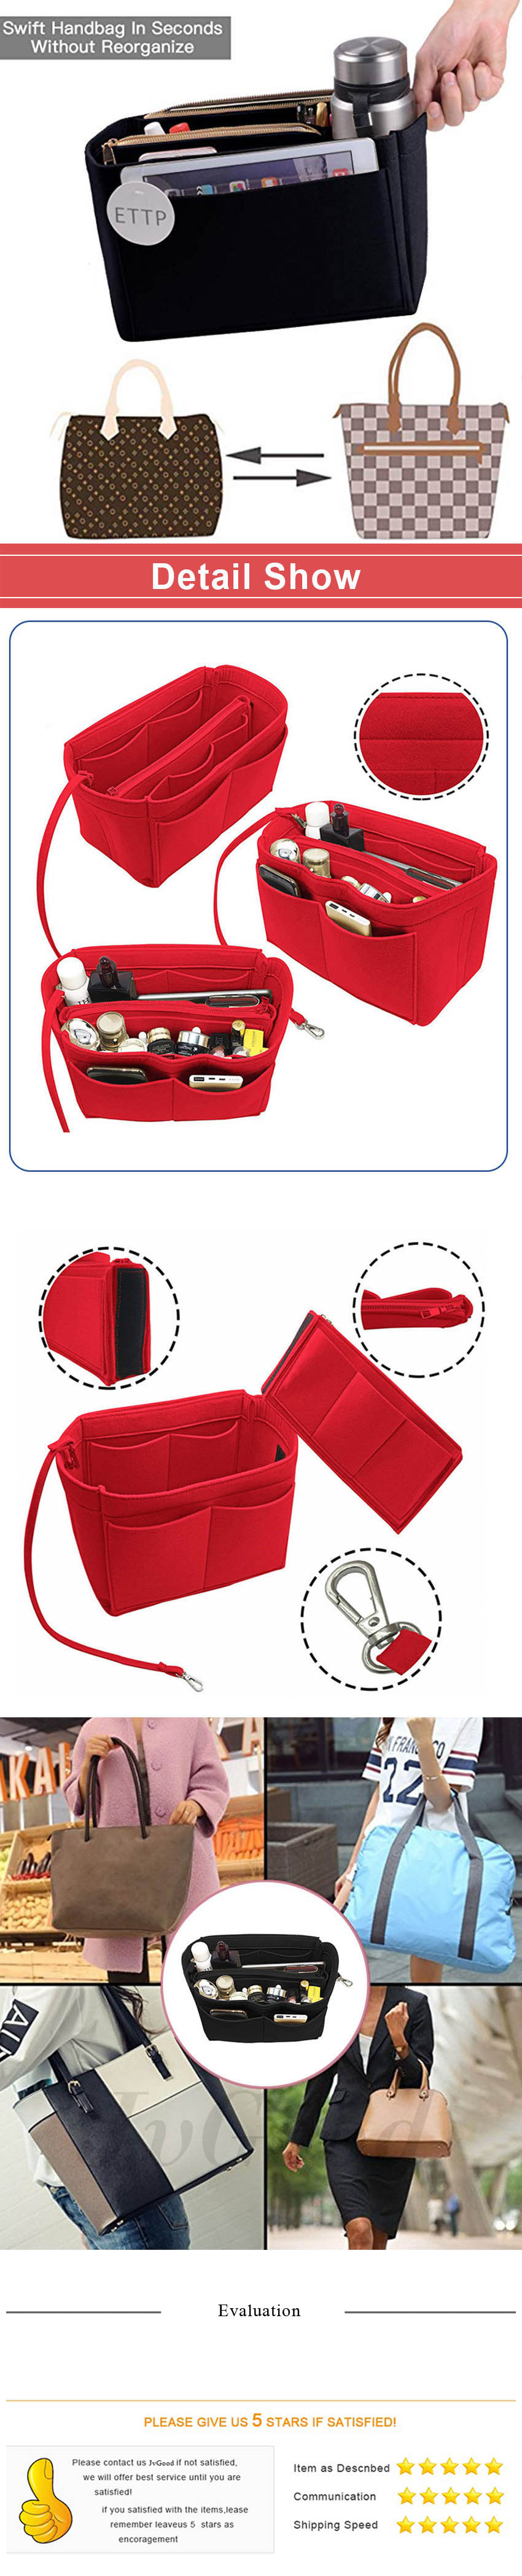 Handbag Organiser 2in1 Bag Tote Insert with Waterproof Pocket 